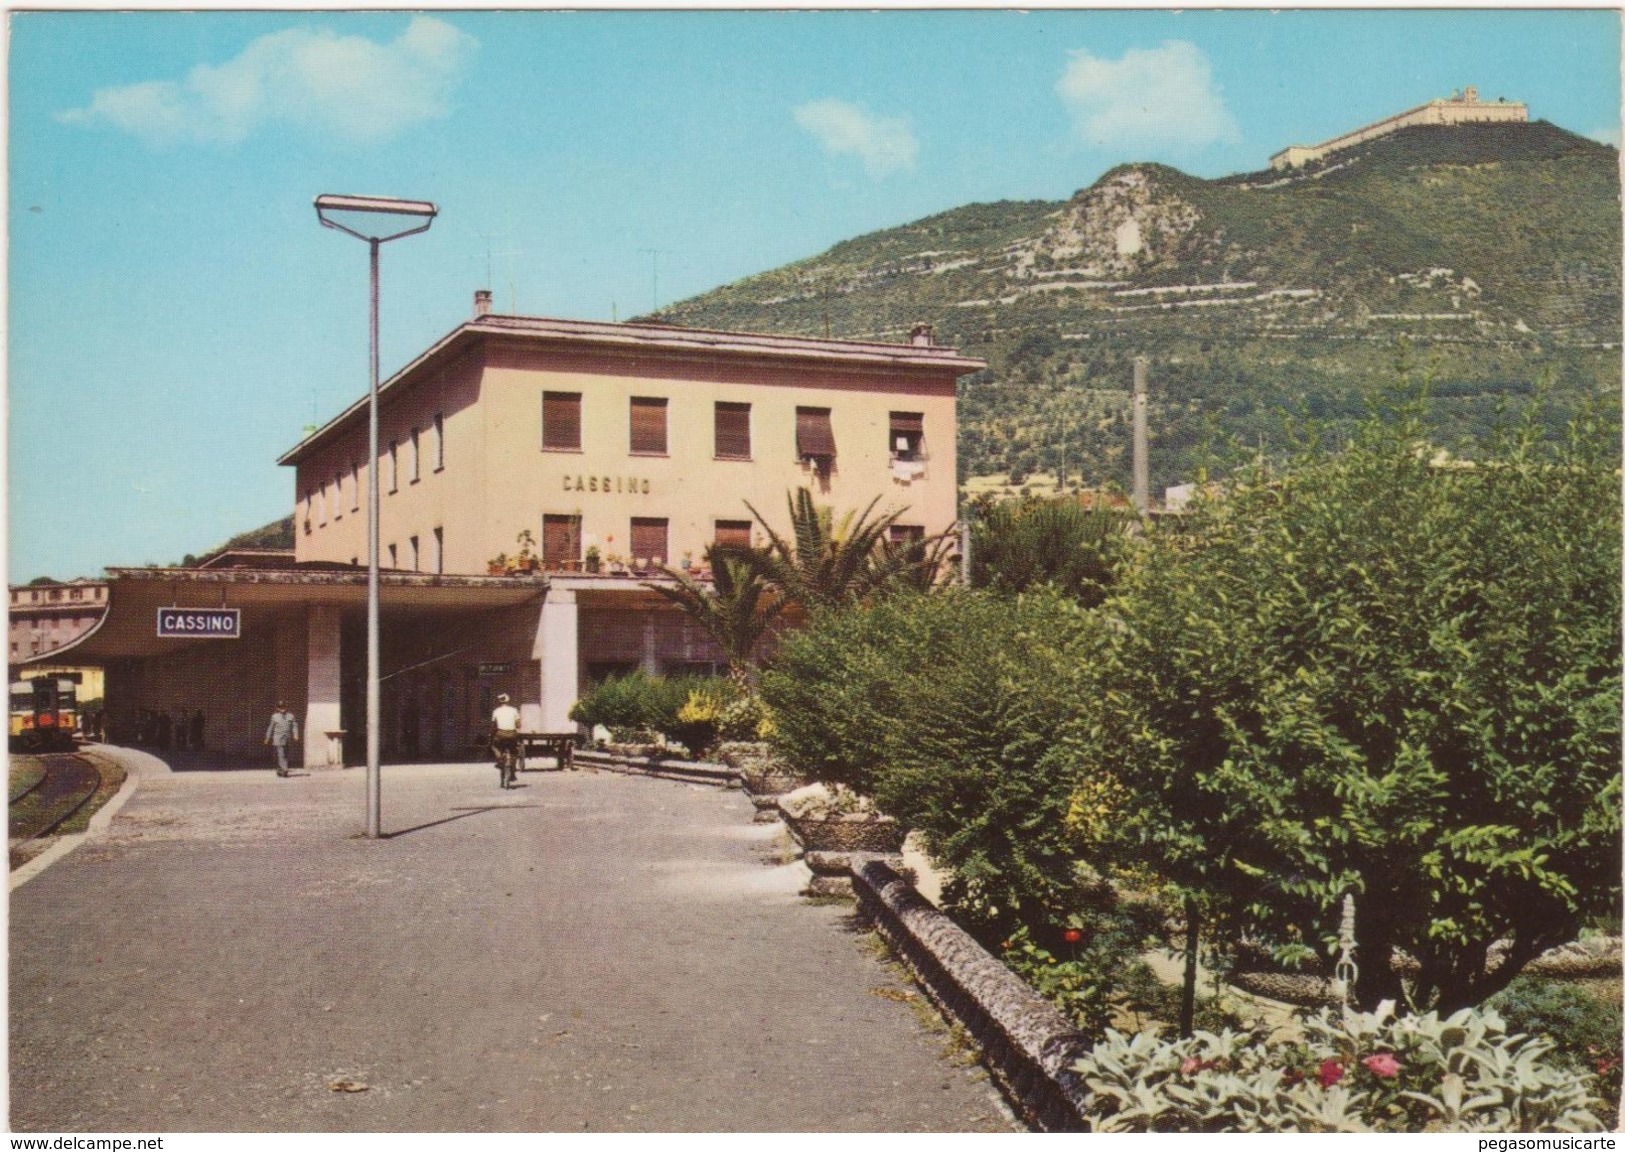 M047  CASSINO FROSINONE STAZIONE FERROVIARIA RAILWY STATION 1970 CIRCA - Frosinone